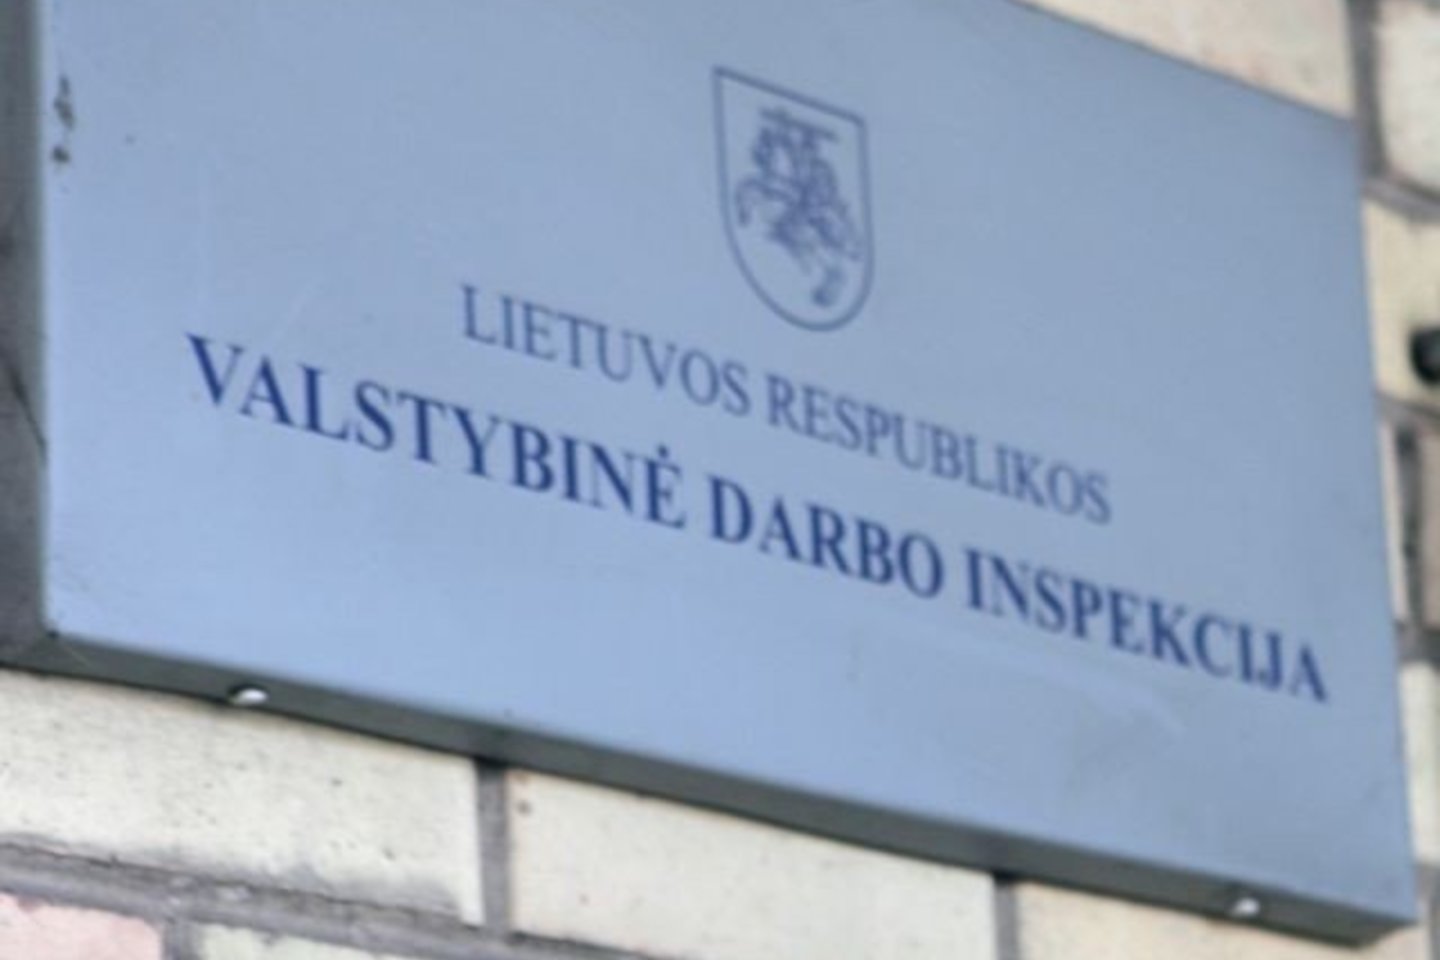 Per 10 dienų trukusią neplaninę nelegalaus darbo prevencijos ir kontrolės akciją, Valstybinė darbo inspekcija (VDI) atliko 546 patikrinimus visoje Lietuvoje.<br>V.Balkūno nuotr.